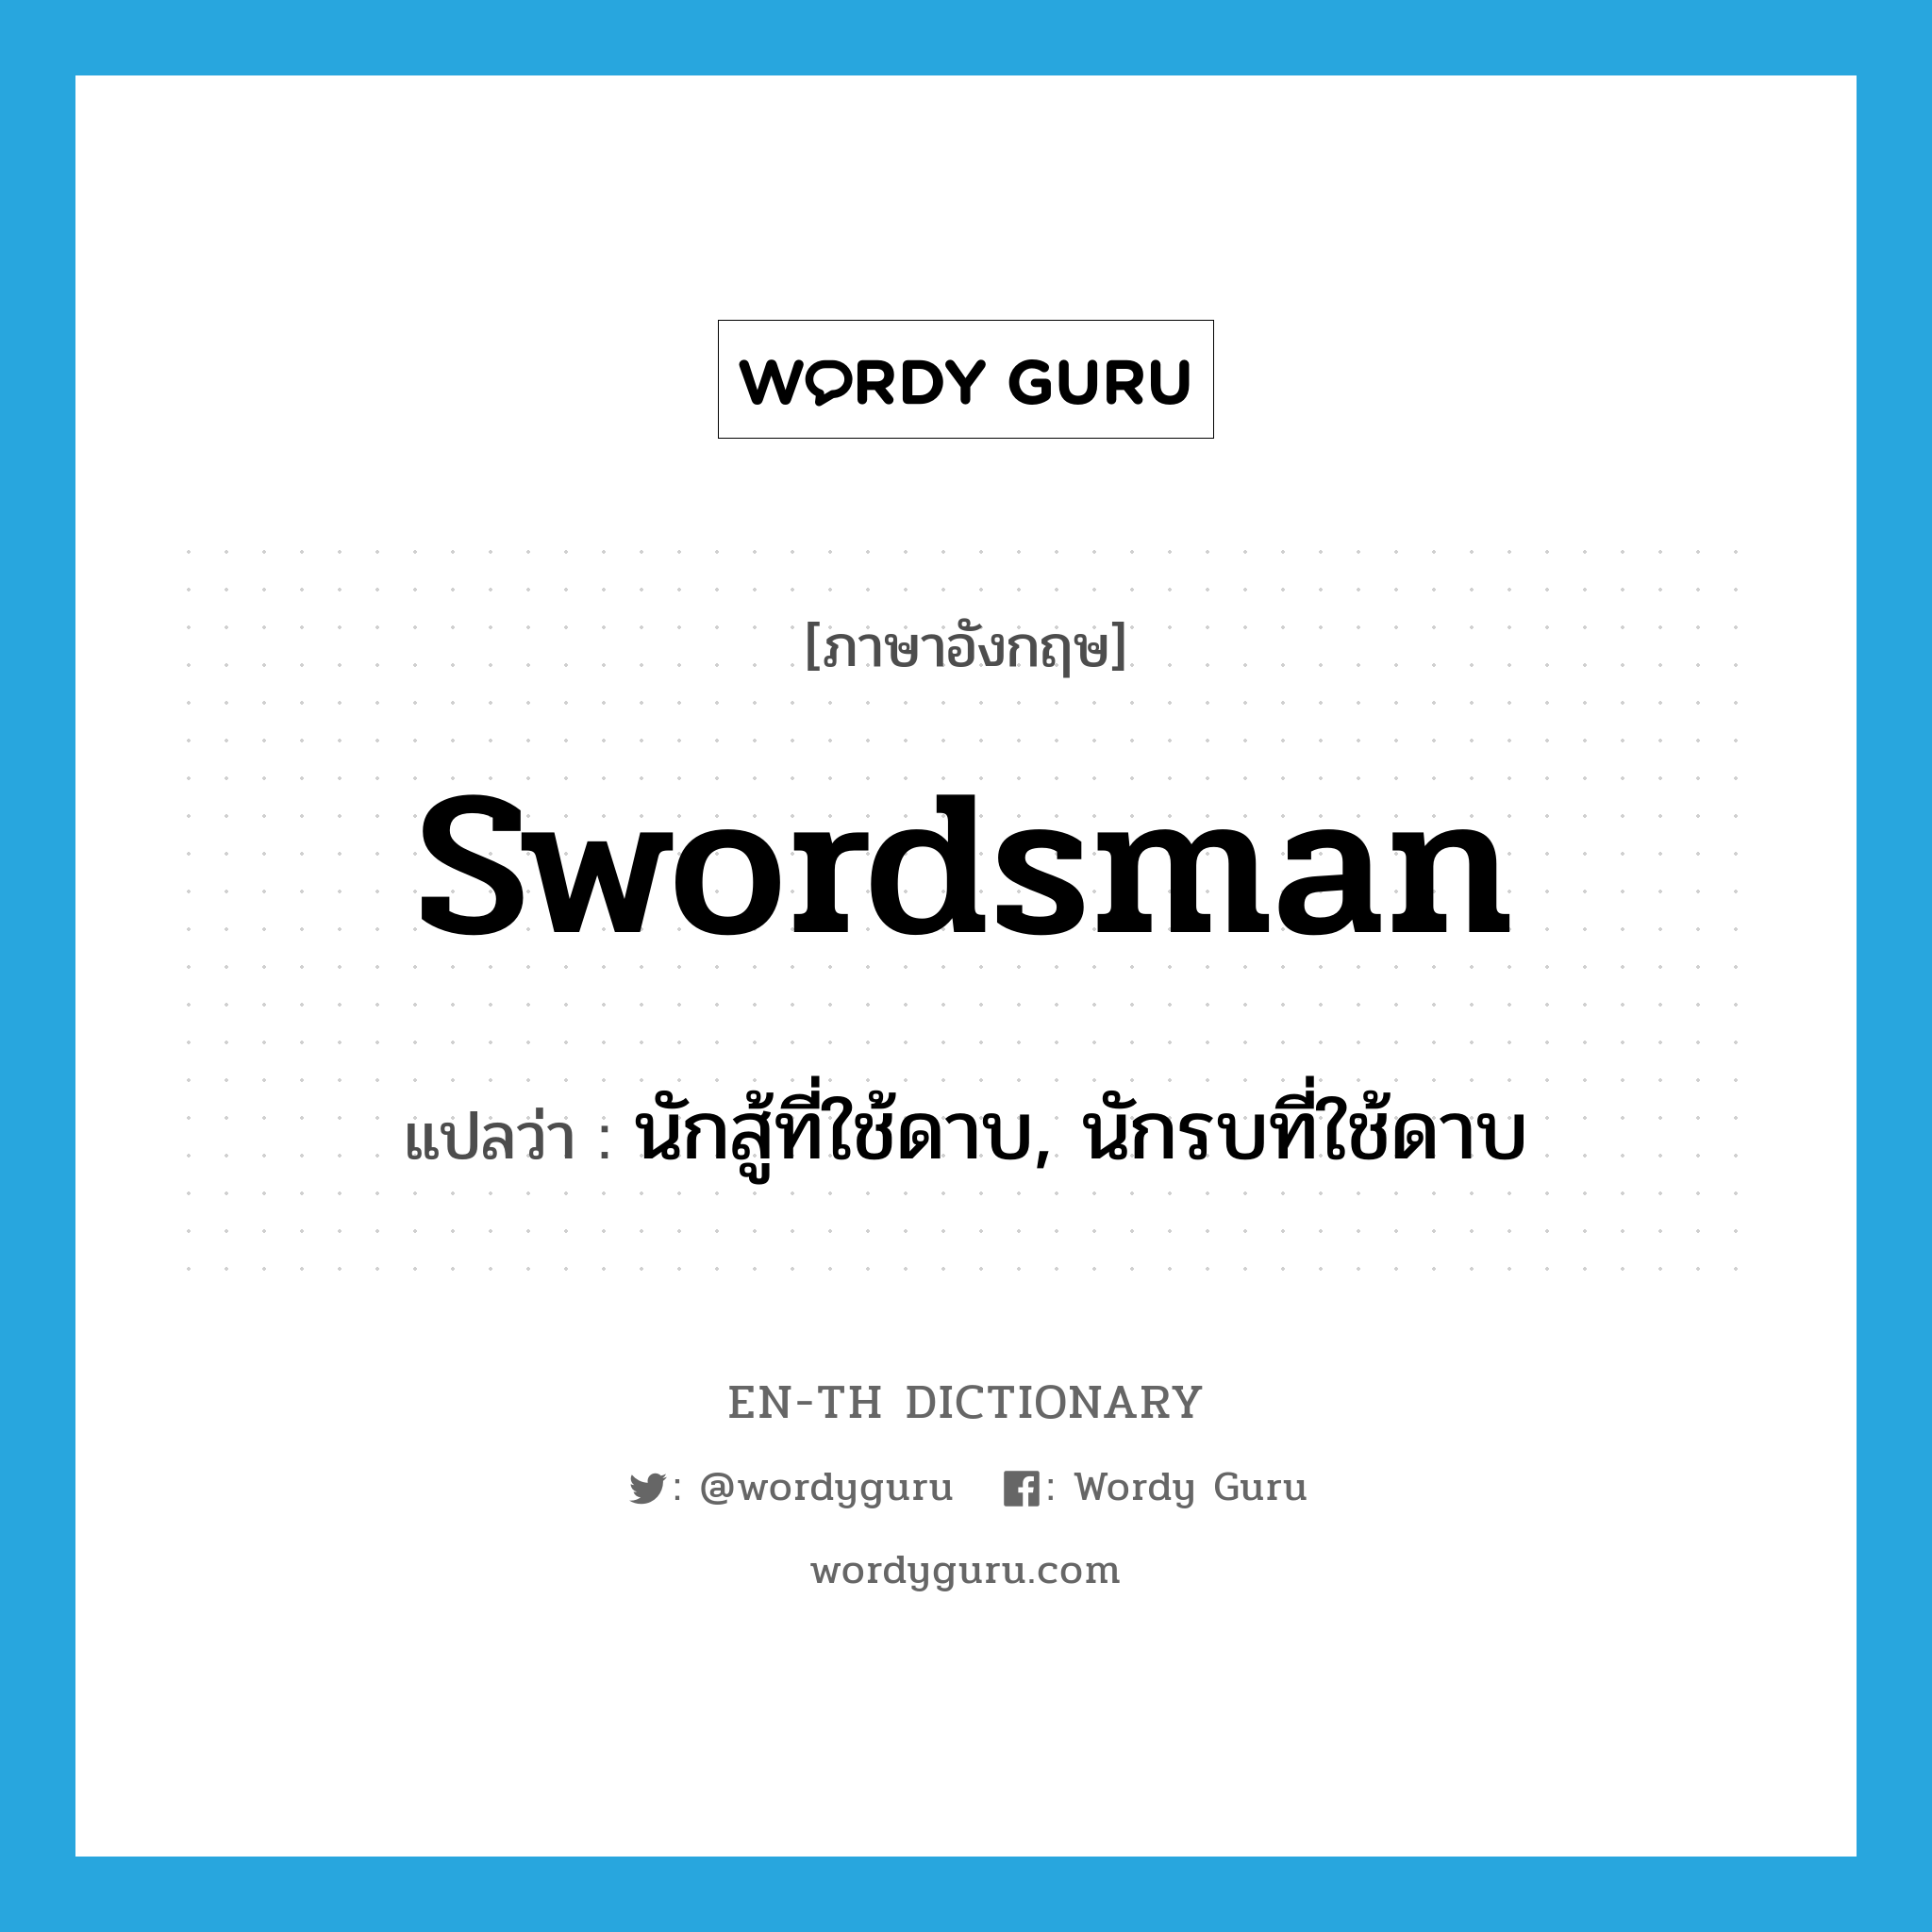 นักสู้ที่ใช้ดาบ, นักรบที่ใช้ดาบ ภาษาอังกฤษ?, คำศัพท์ภาษาอังกฤษ นักสู้ที่ใช้ดาบ, นักรบที่ใช้ดาบ แปลว่า swordsman ประเภท N หมวด N